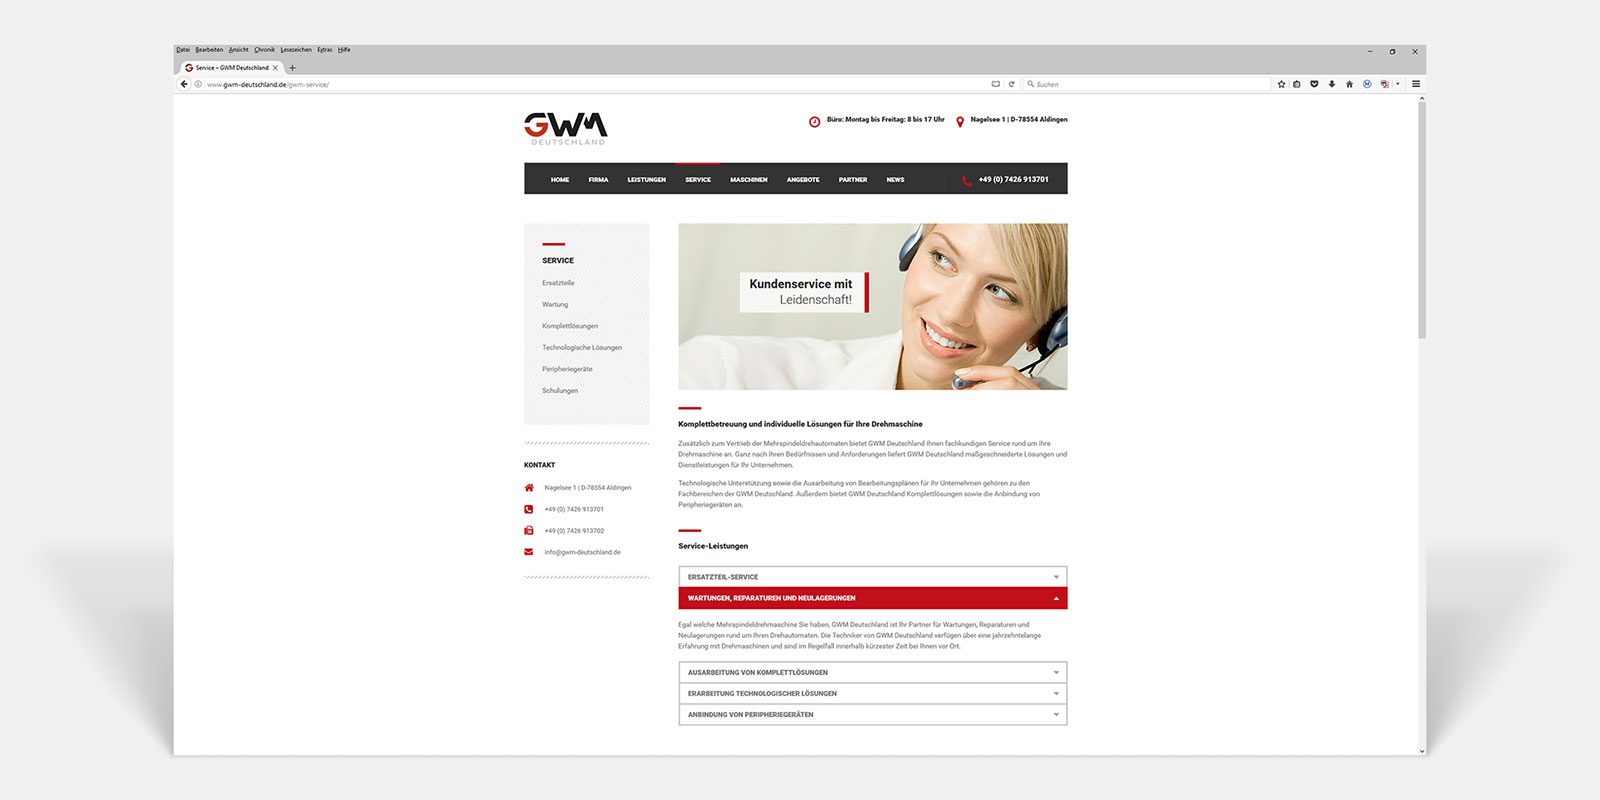 GWM Deutschland GmbH Responsive Website Service by Hirschburg Werbeagentur